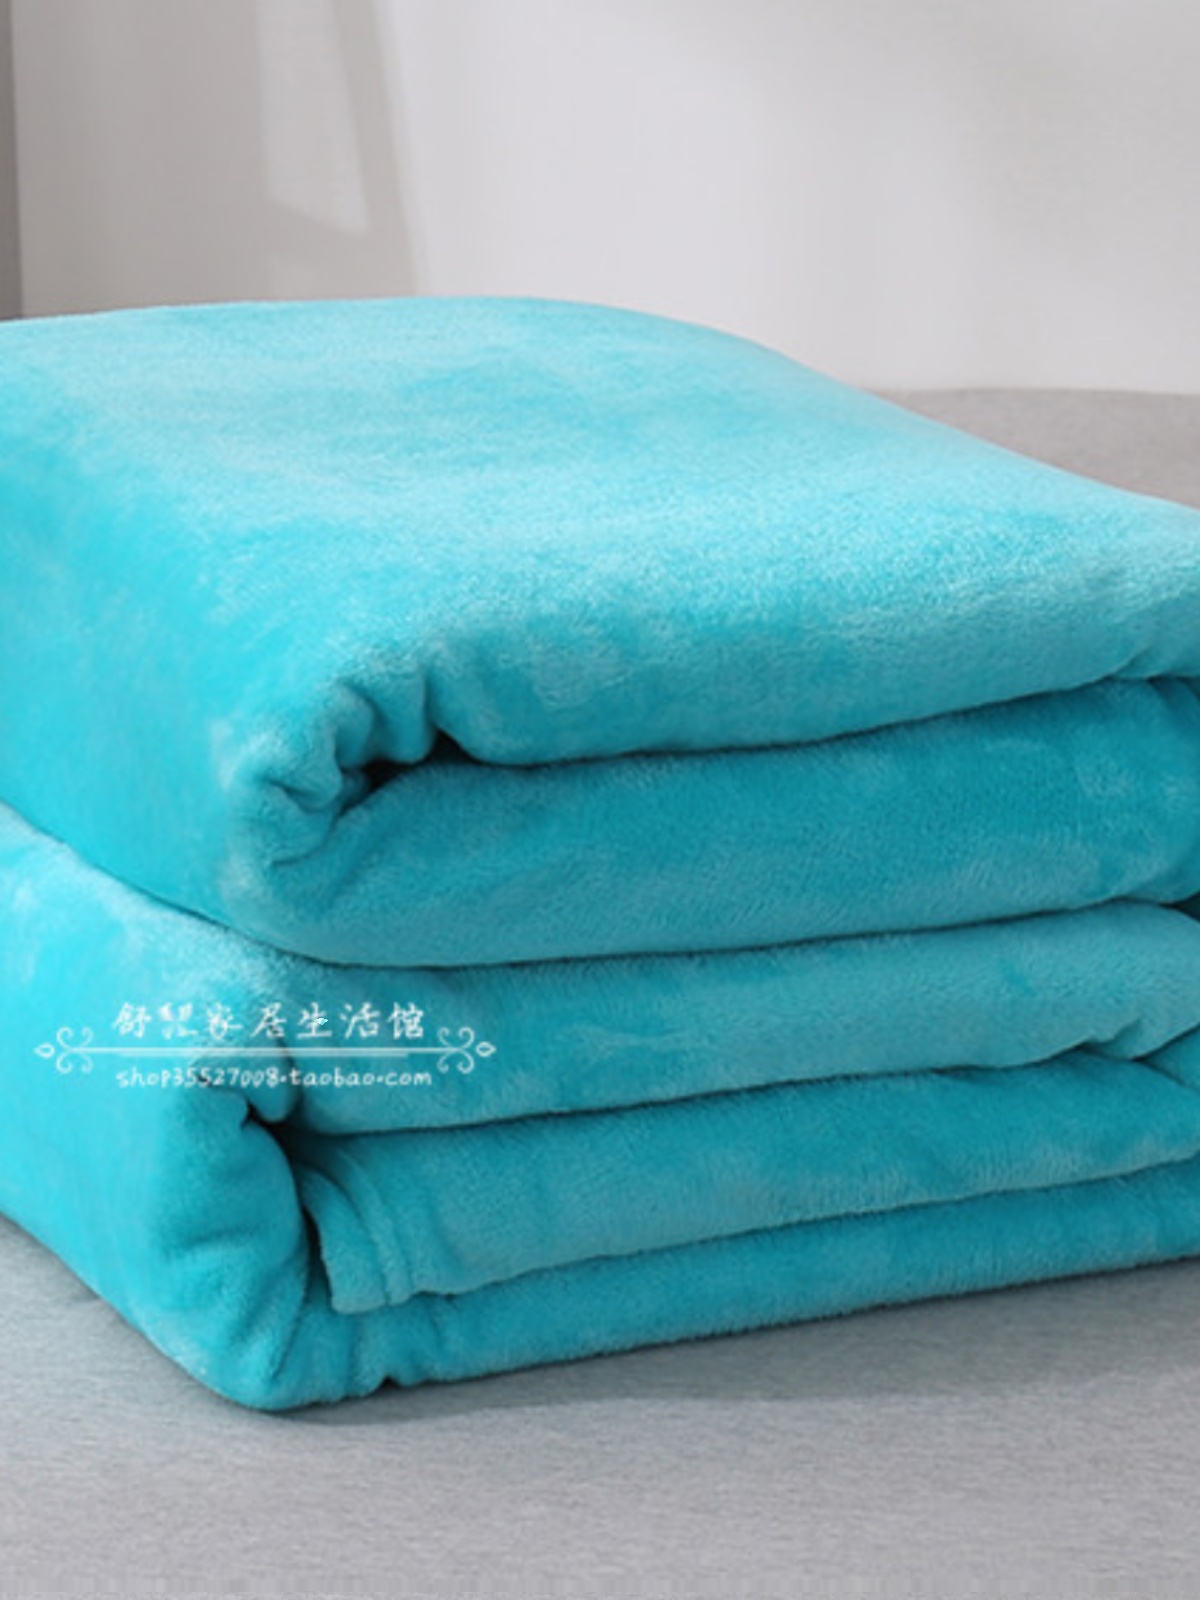 珊瑚绒毯子空调毯纯色毛毯被单绒毯单人毛巾被懒人毯午睡毯休闲毯 - 图2